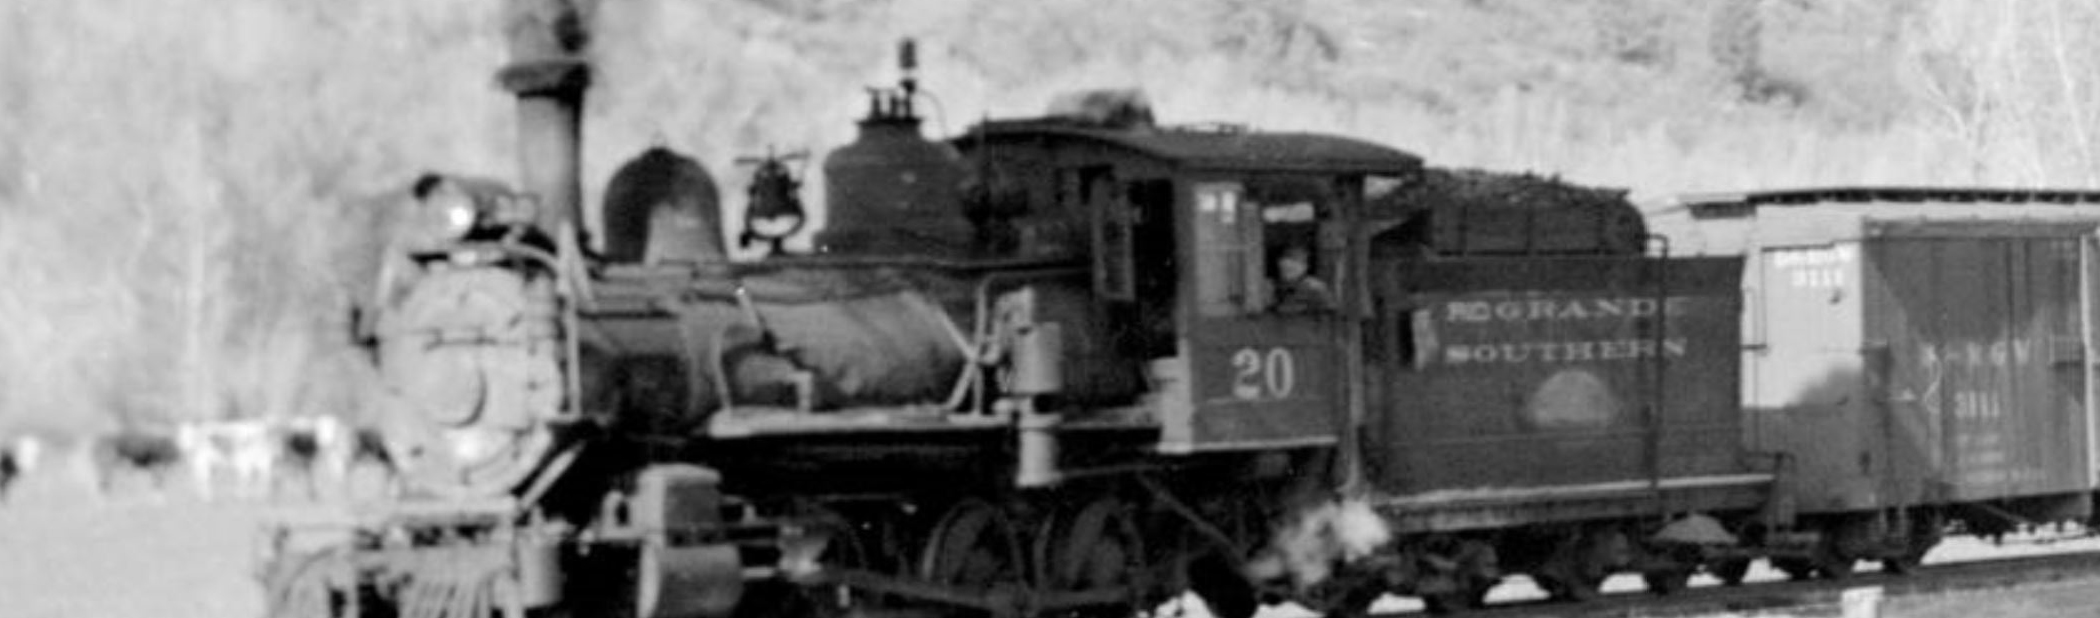 Rio Grande Southern Steam Locomotive No. 20 Restoration Update – June 2018